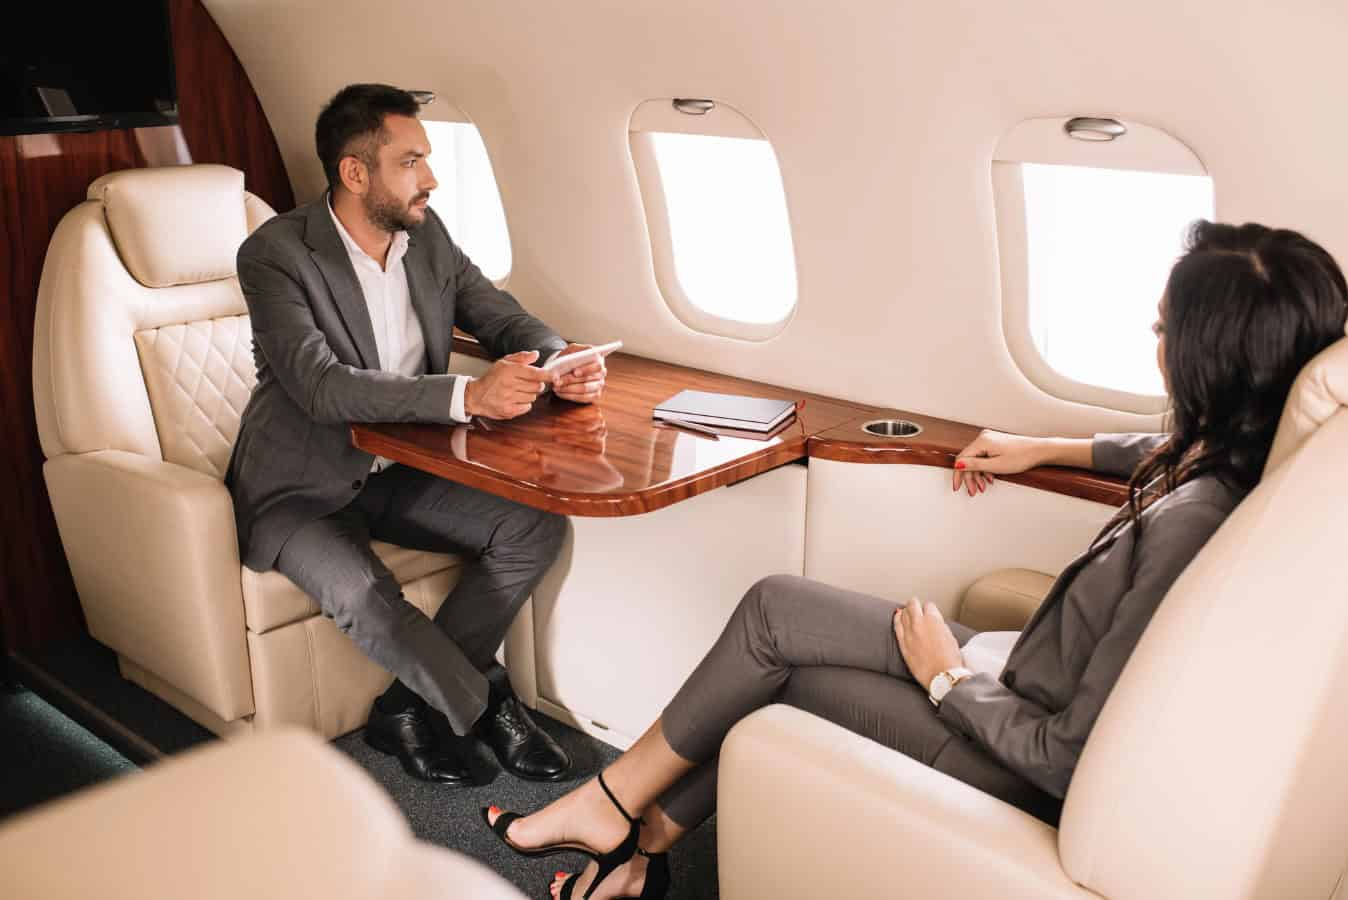 Billionaire in private jet